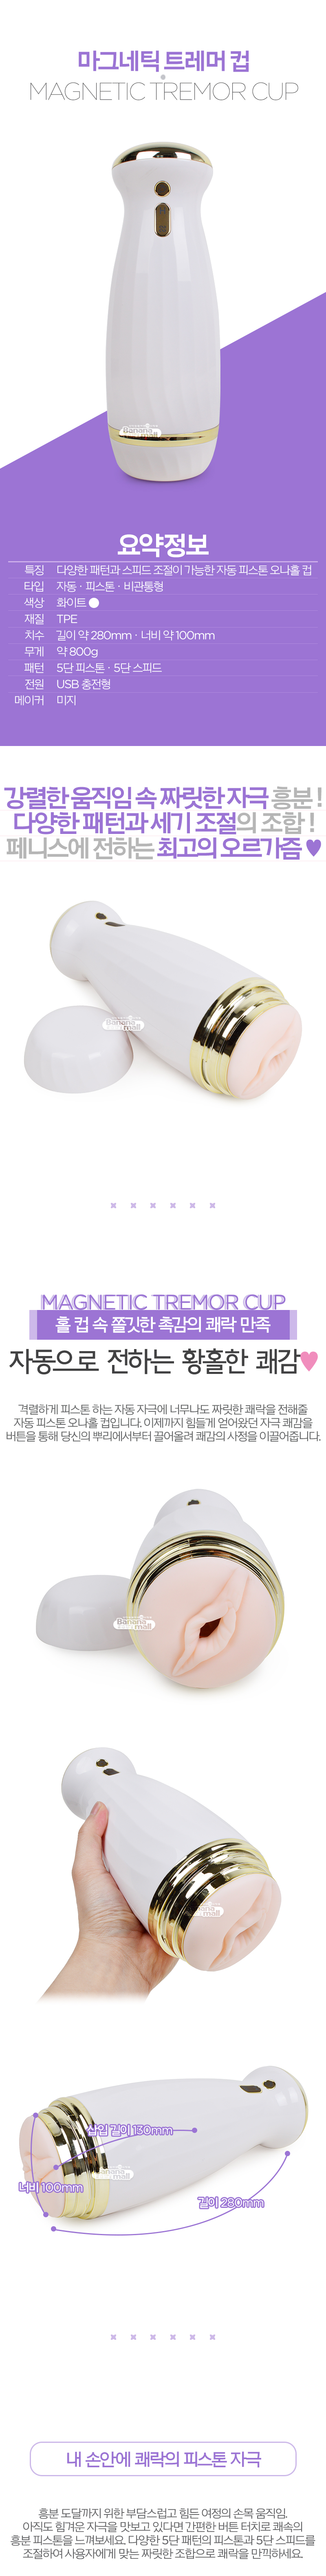 [5단 피스톤+5단 스피드] 마그네틱 트레머 컵(Magnetic Tremor Cup)